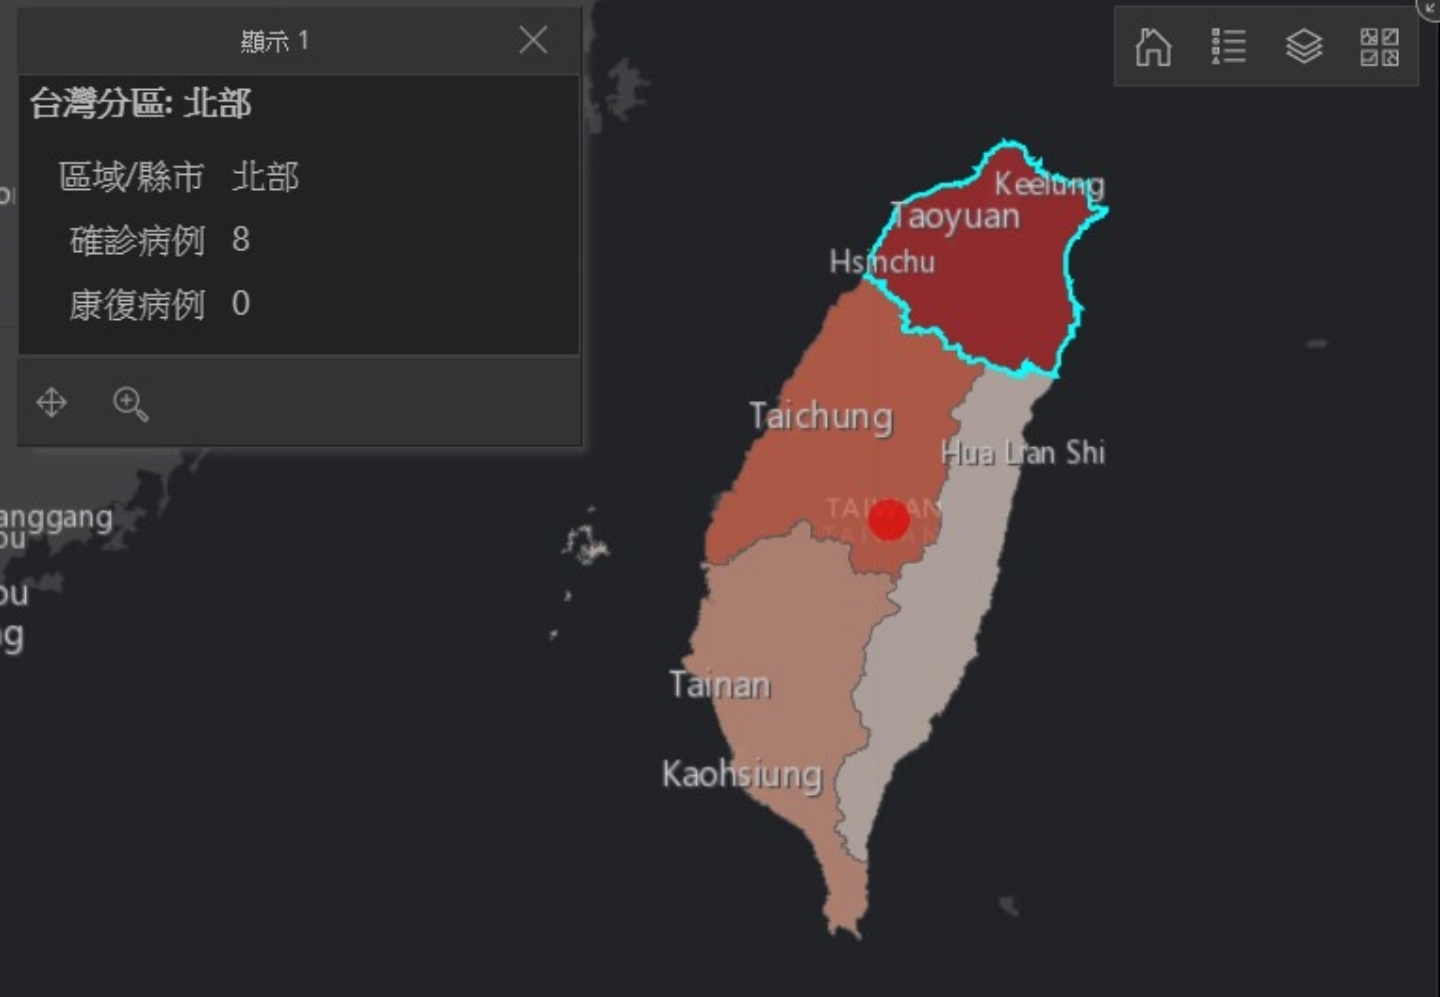 『 台灣版 』武漢肺炎疫情即時地圖 中文介面更好讀 疫情災區一次掌握